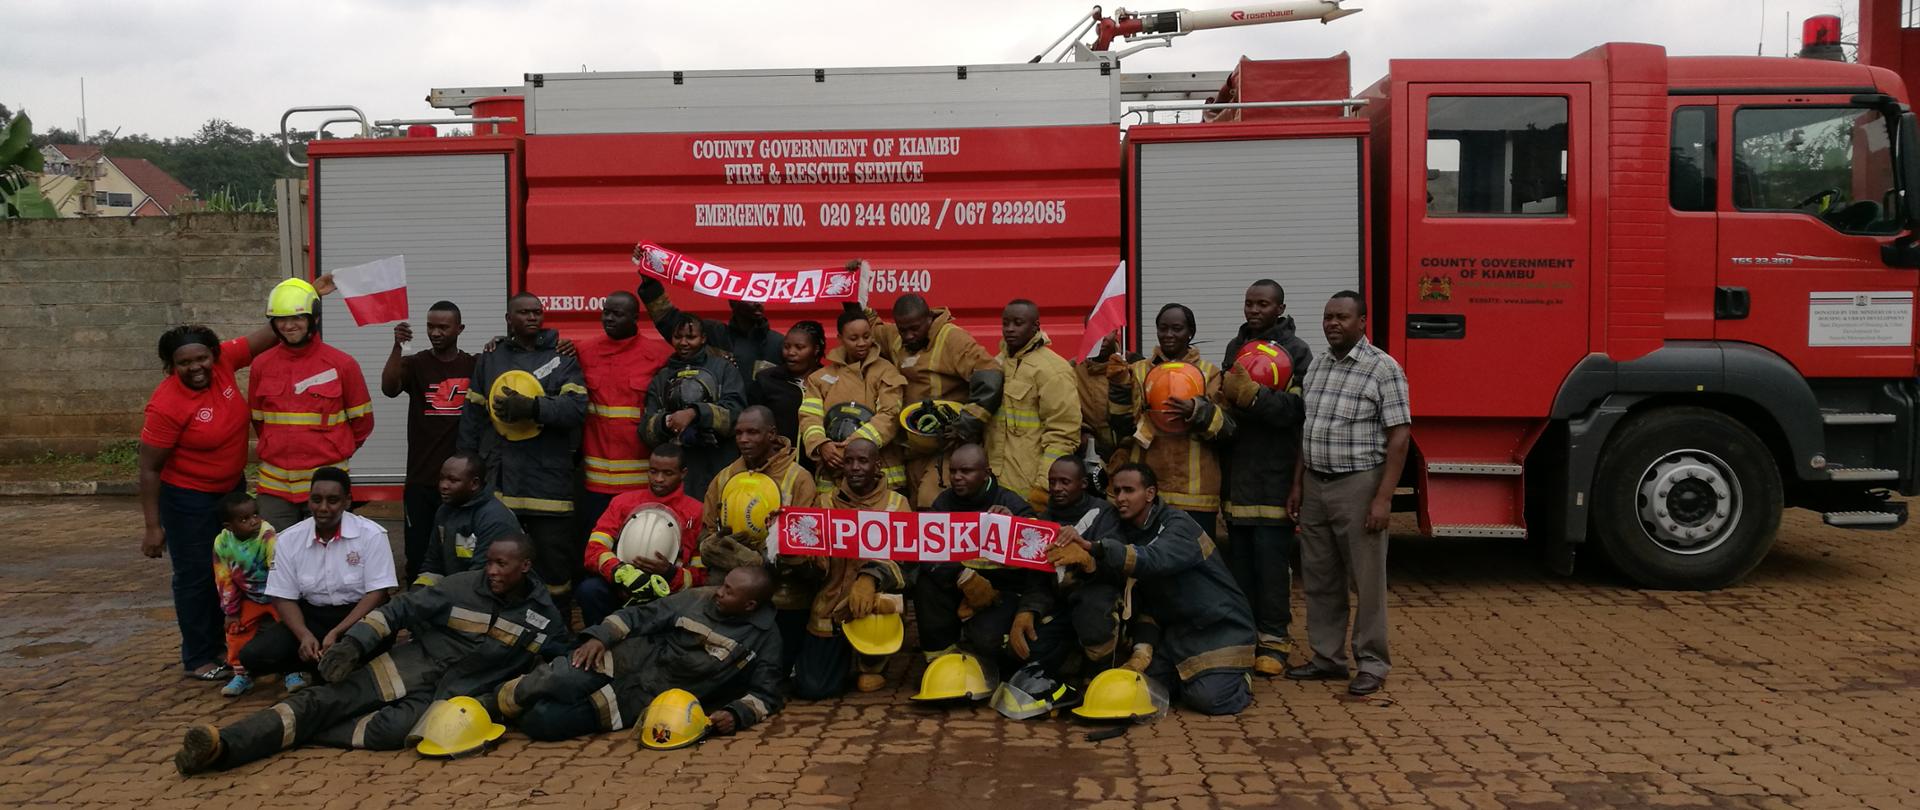 Zdjęcie grupowe strażaków kenijskich na tle wozu strażackiego